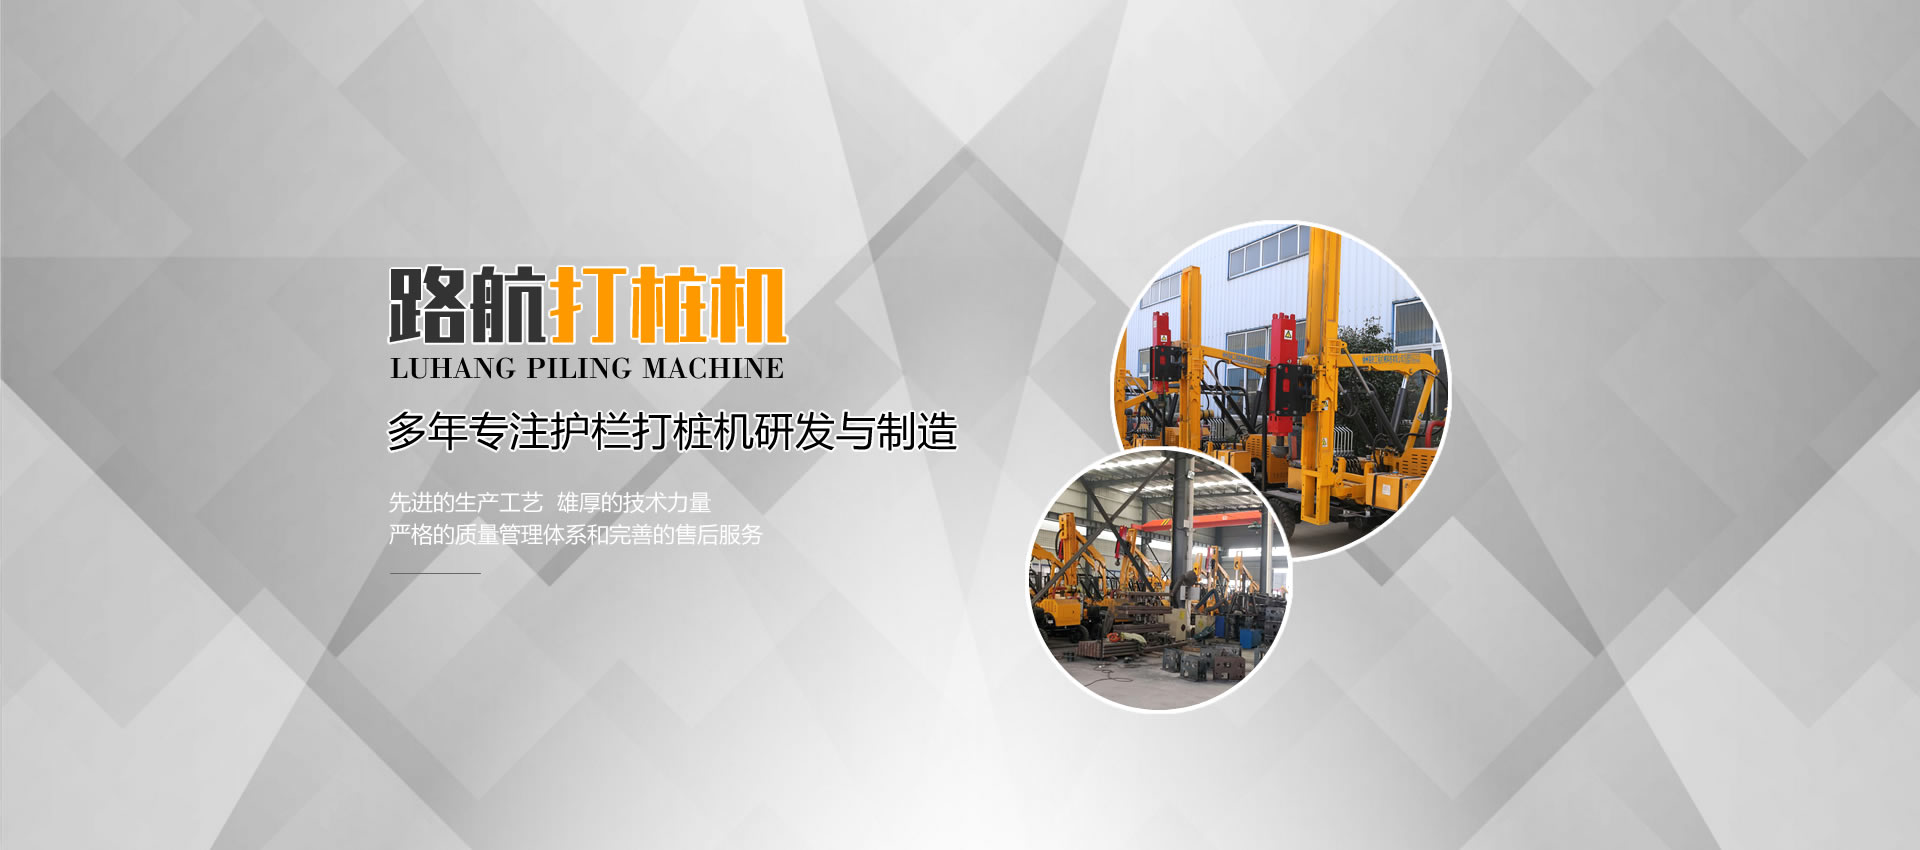 徐州路航工程機械科技有限公司 多年專注護欄打樁機研發與制造